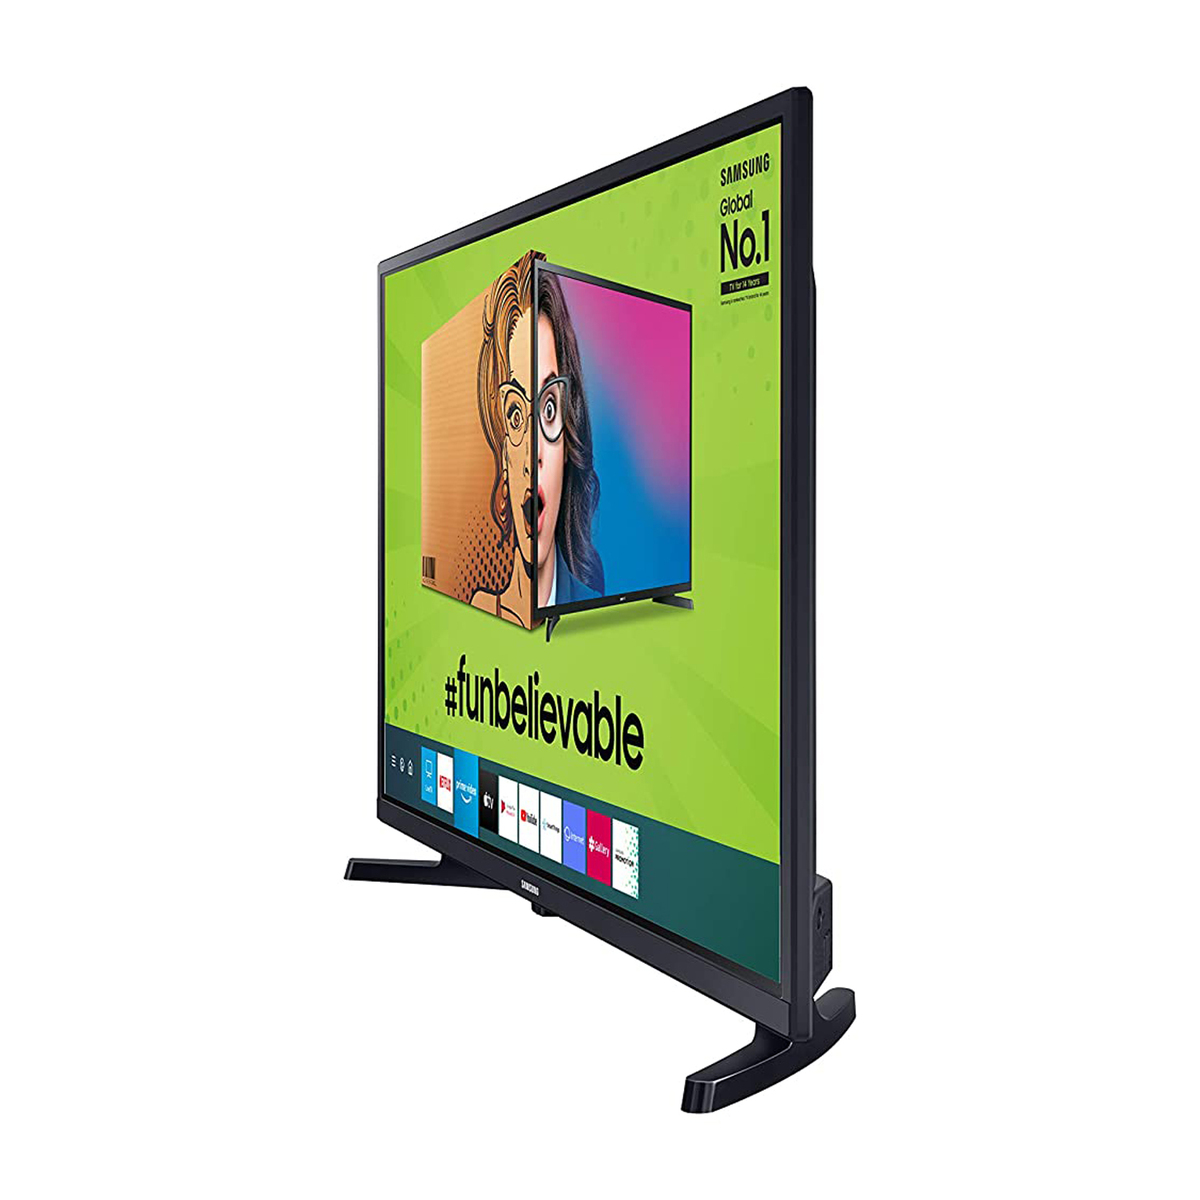 Samsung LED Smart TV T4350 32"